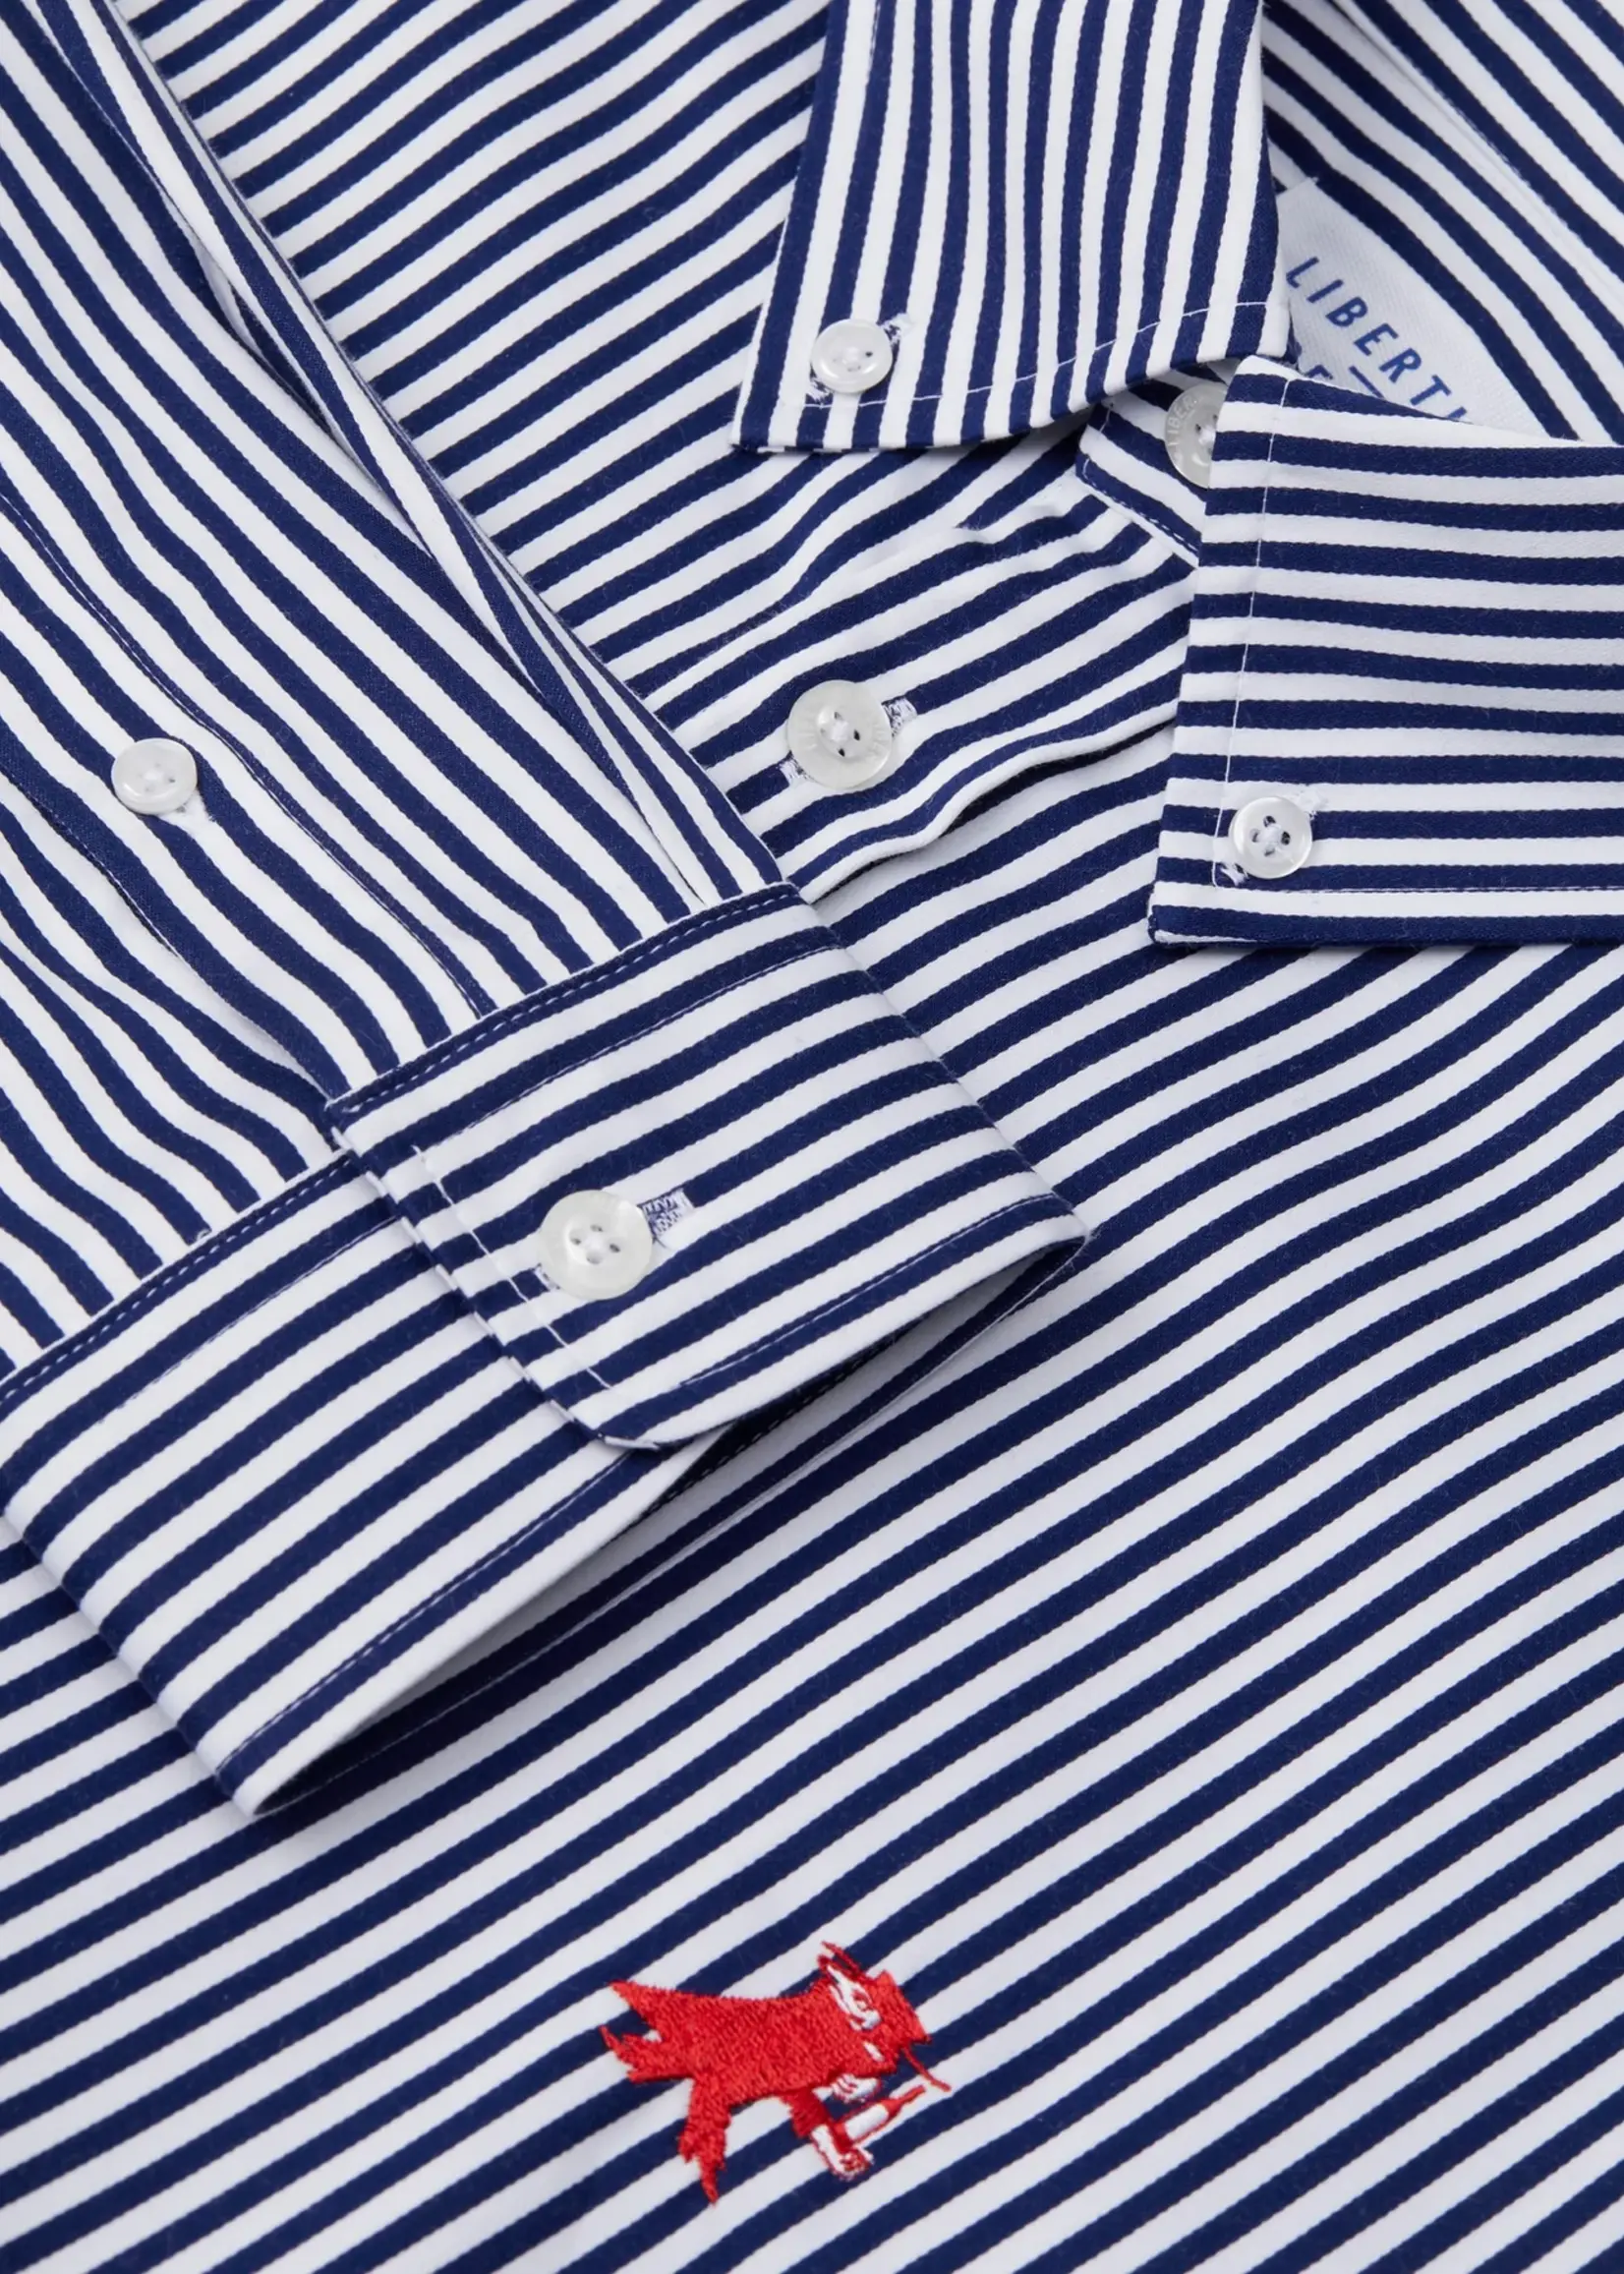 Libertine - Libertine Libertine-Libertine Voleur shirt navy stripe